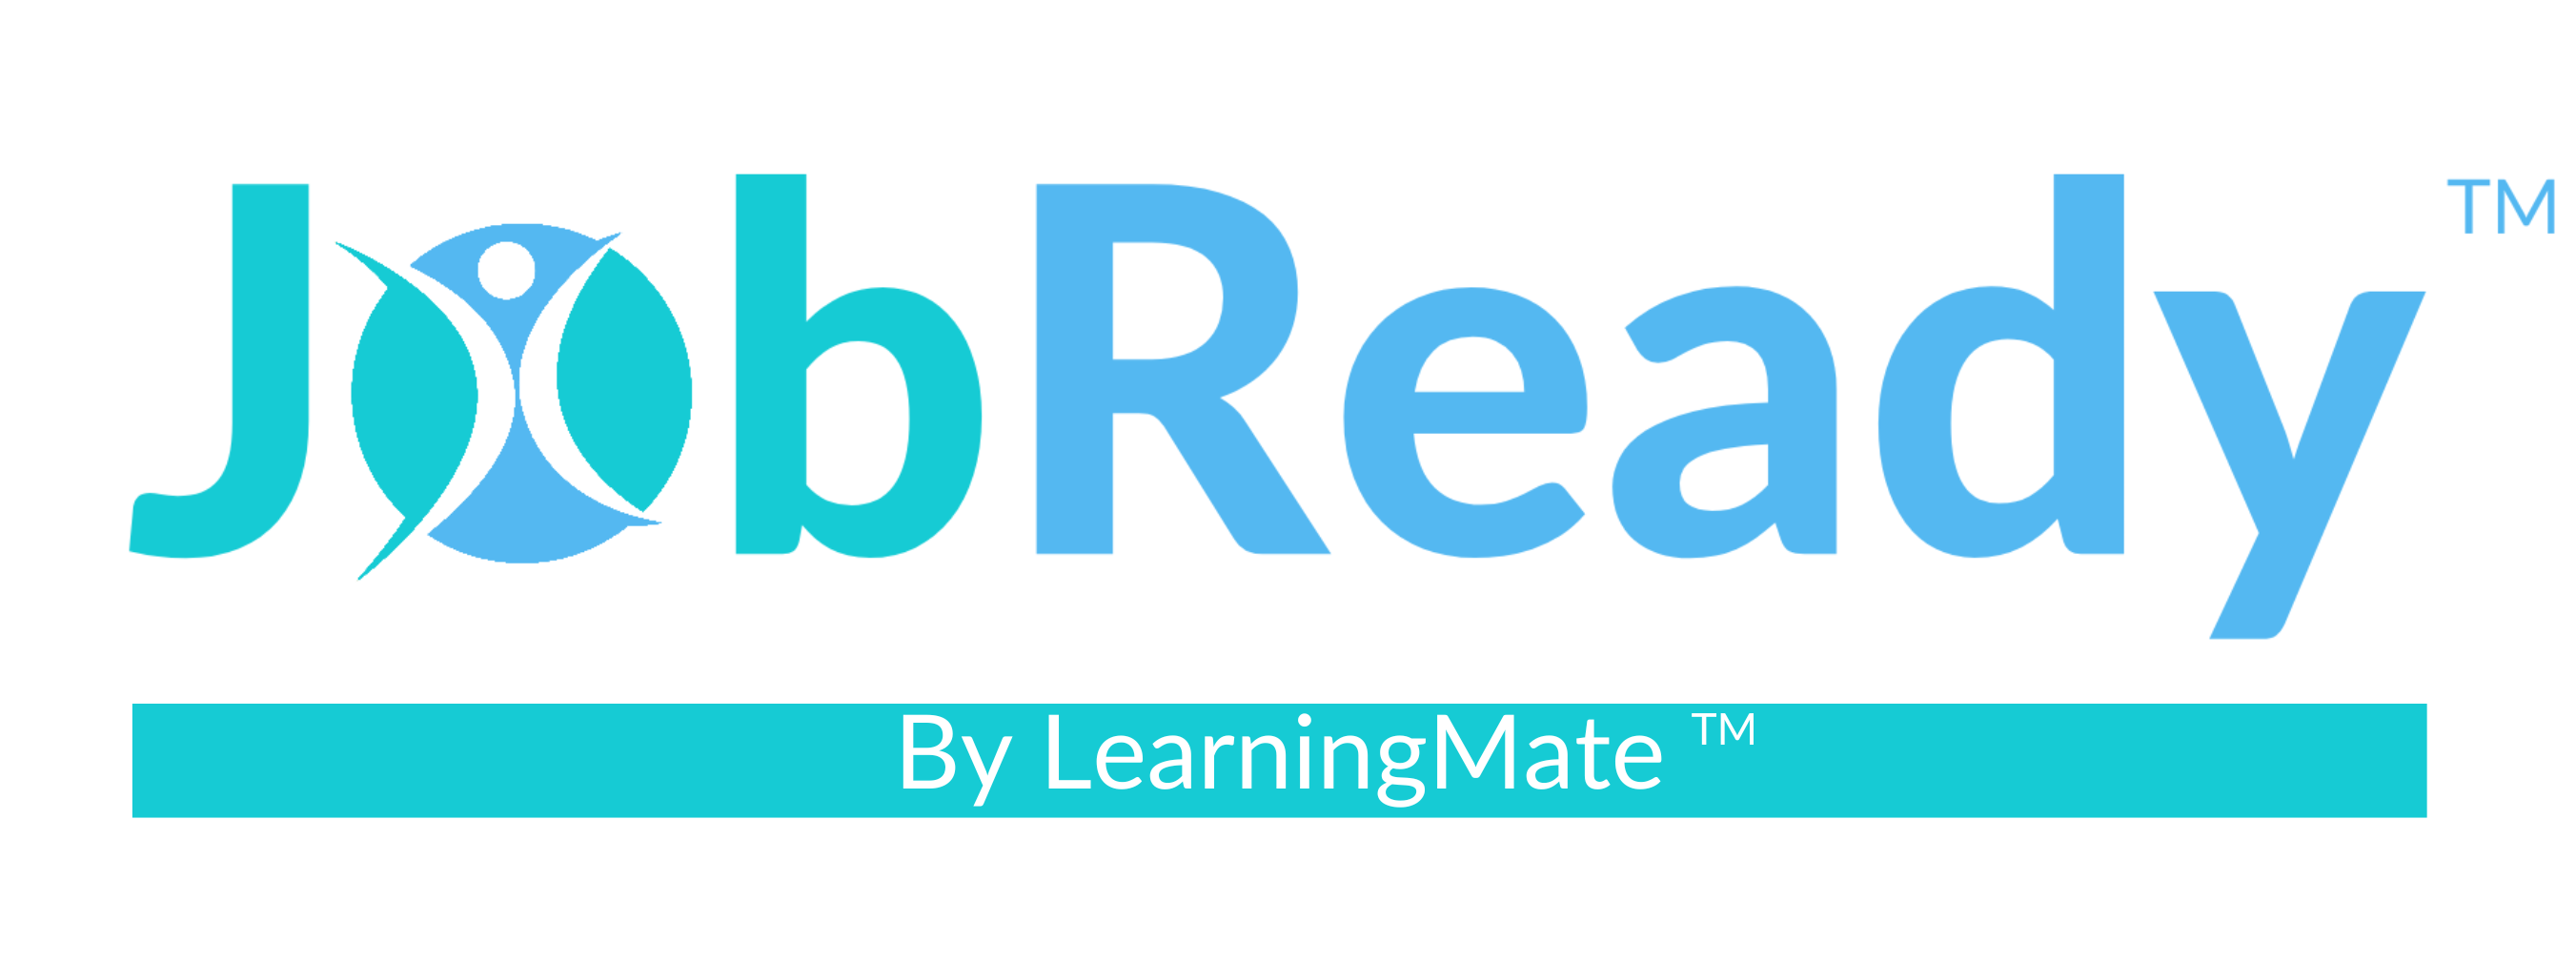 Job Ready by LearningMate Logo